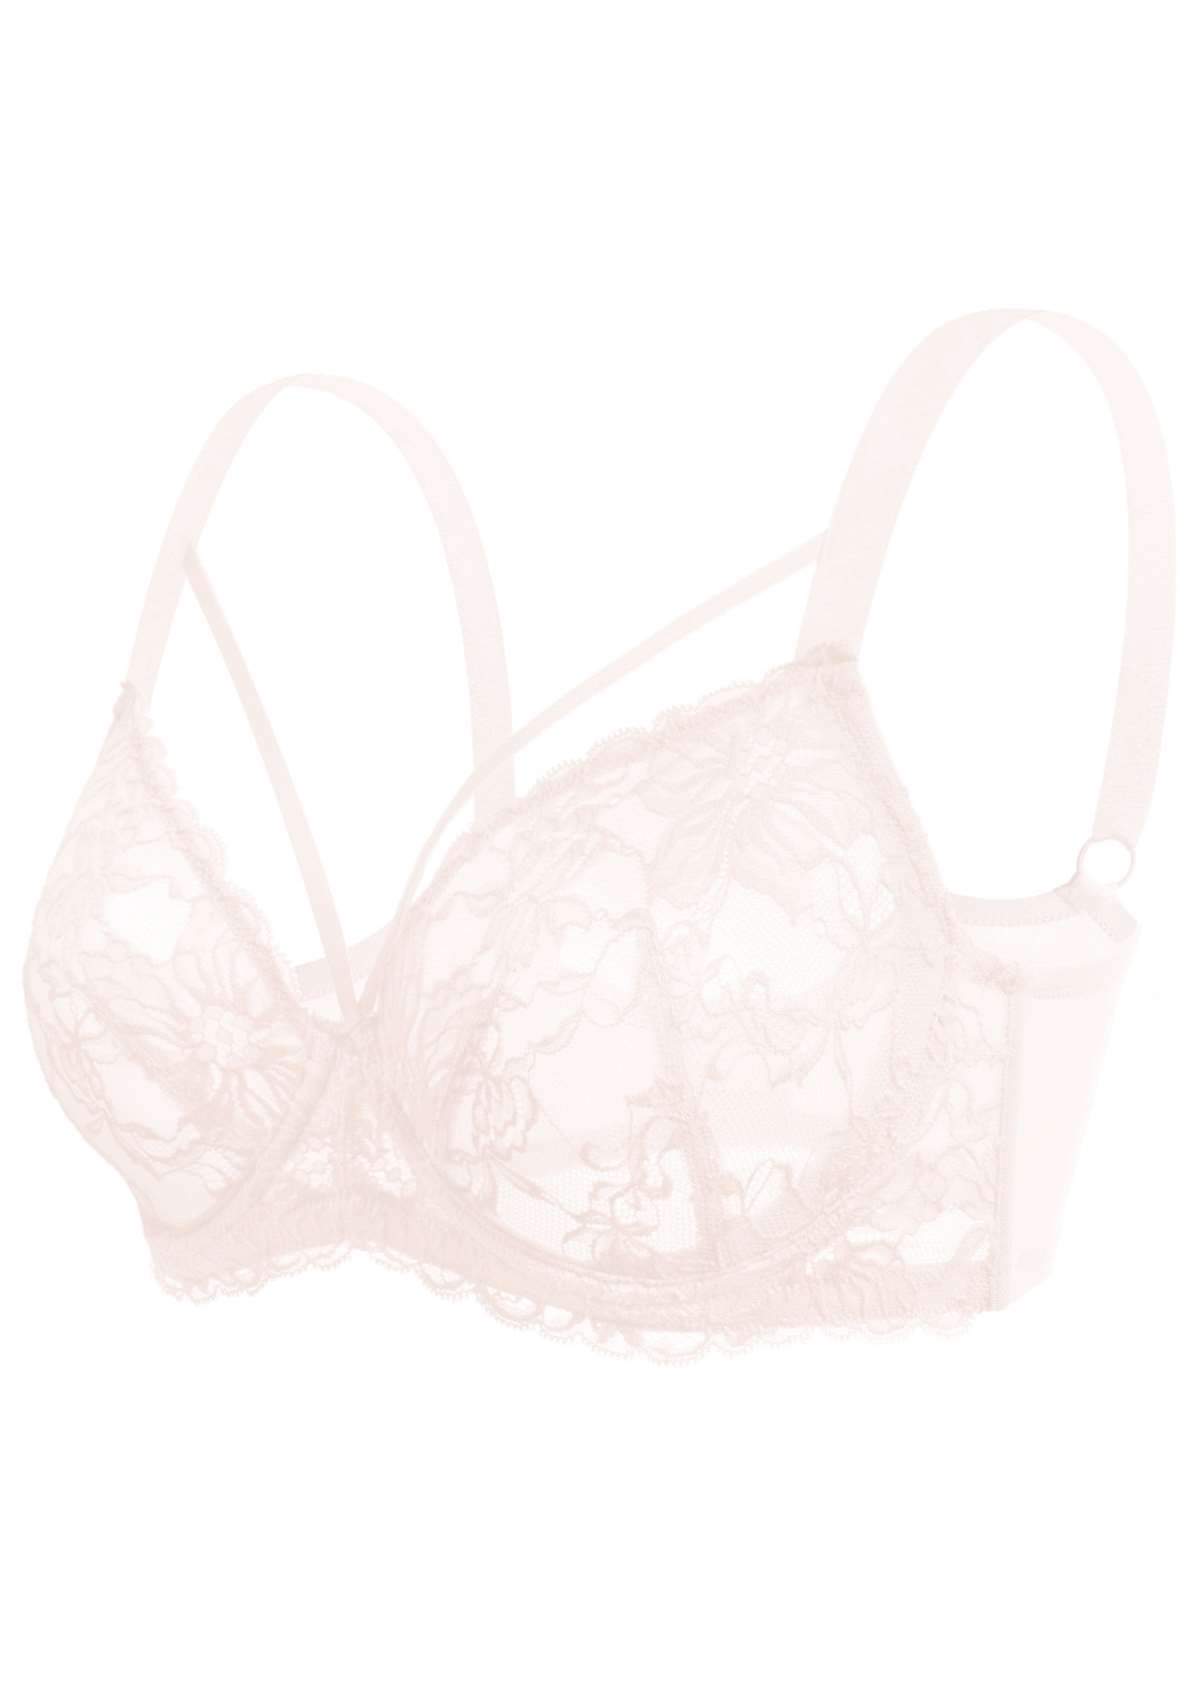 HSIA Pretty In Petals Underwire Lace Bra: No Padding, Full Cup Bra - Pink / 38 / DDD/F